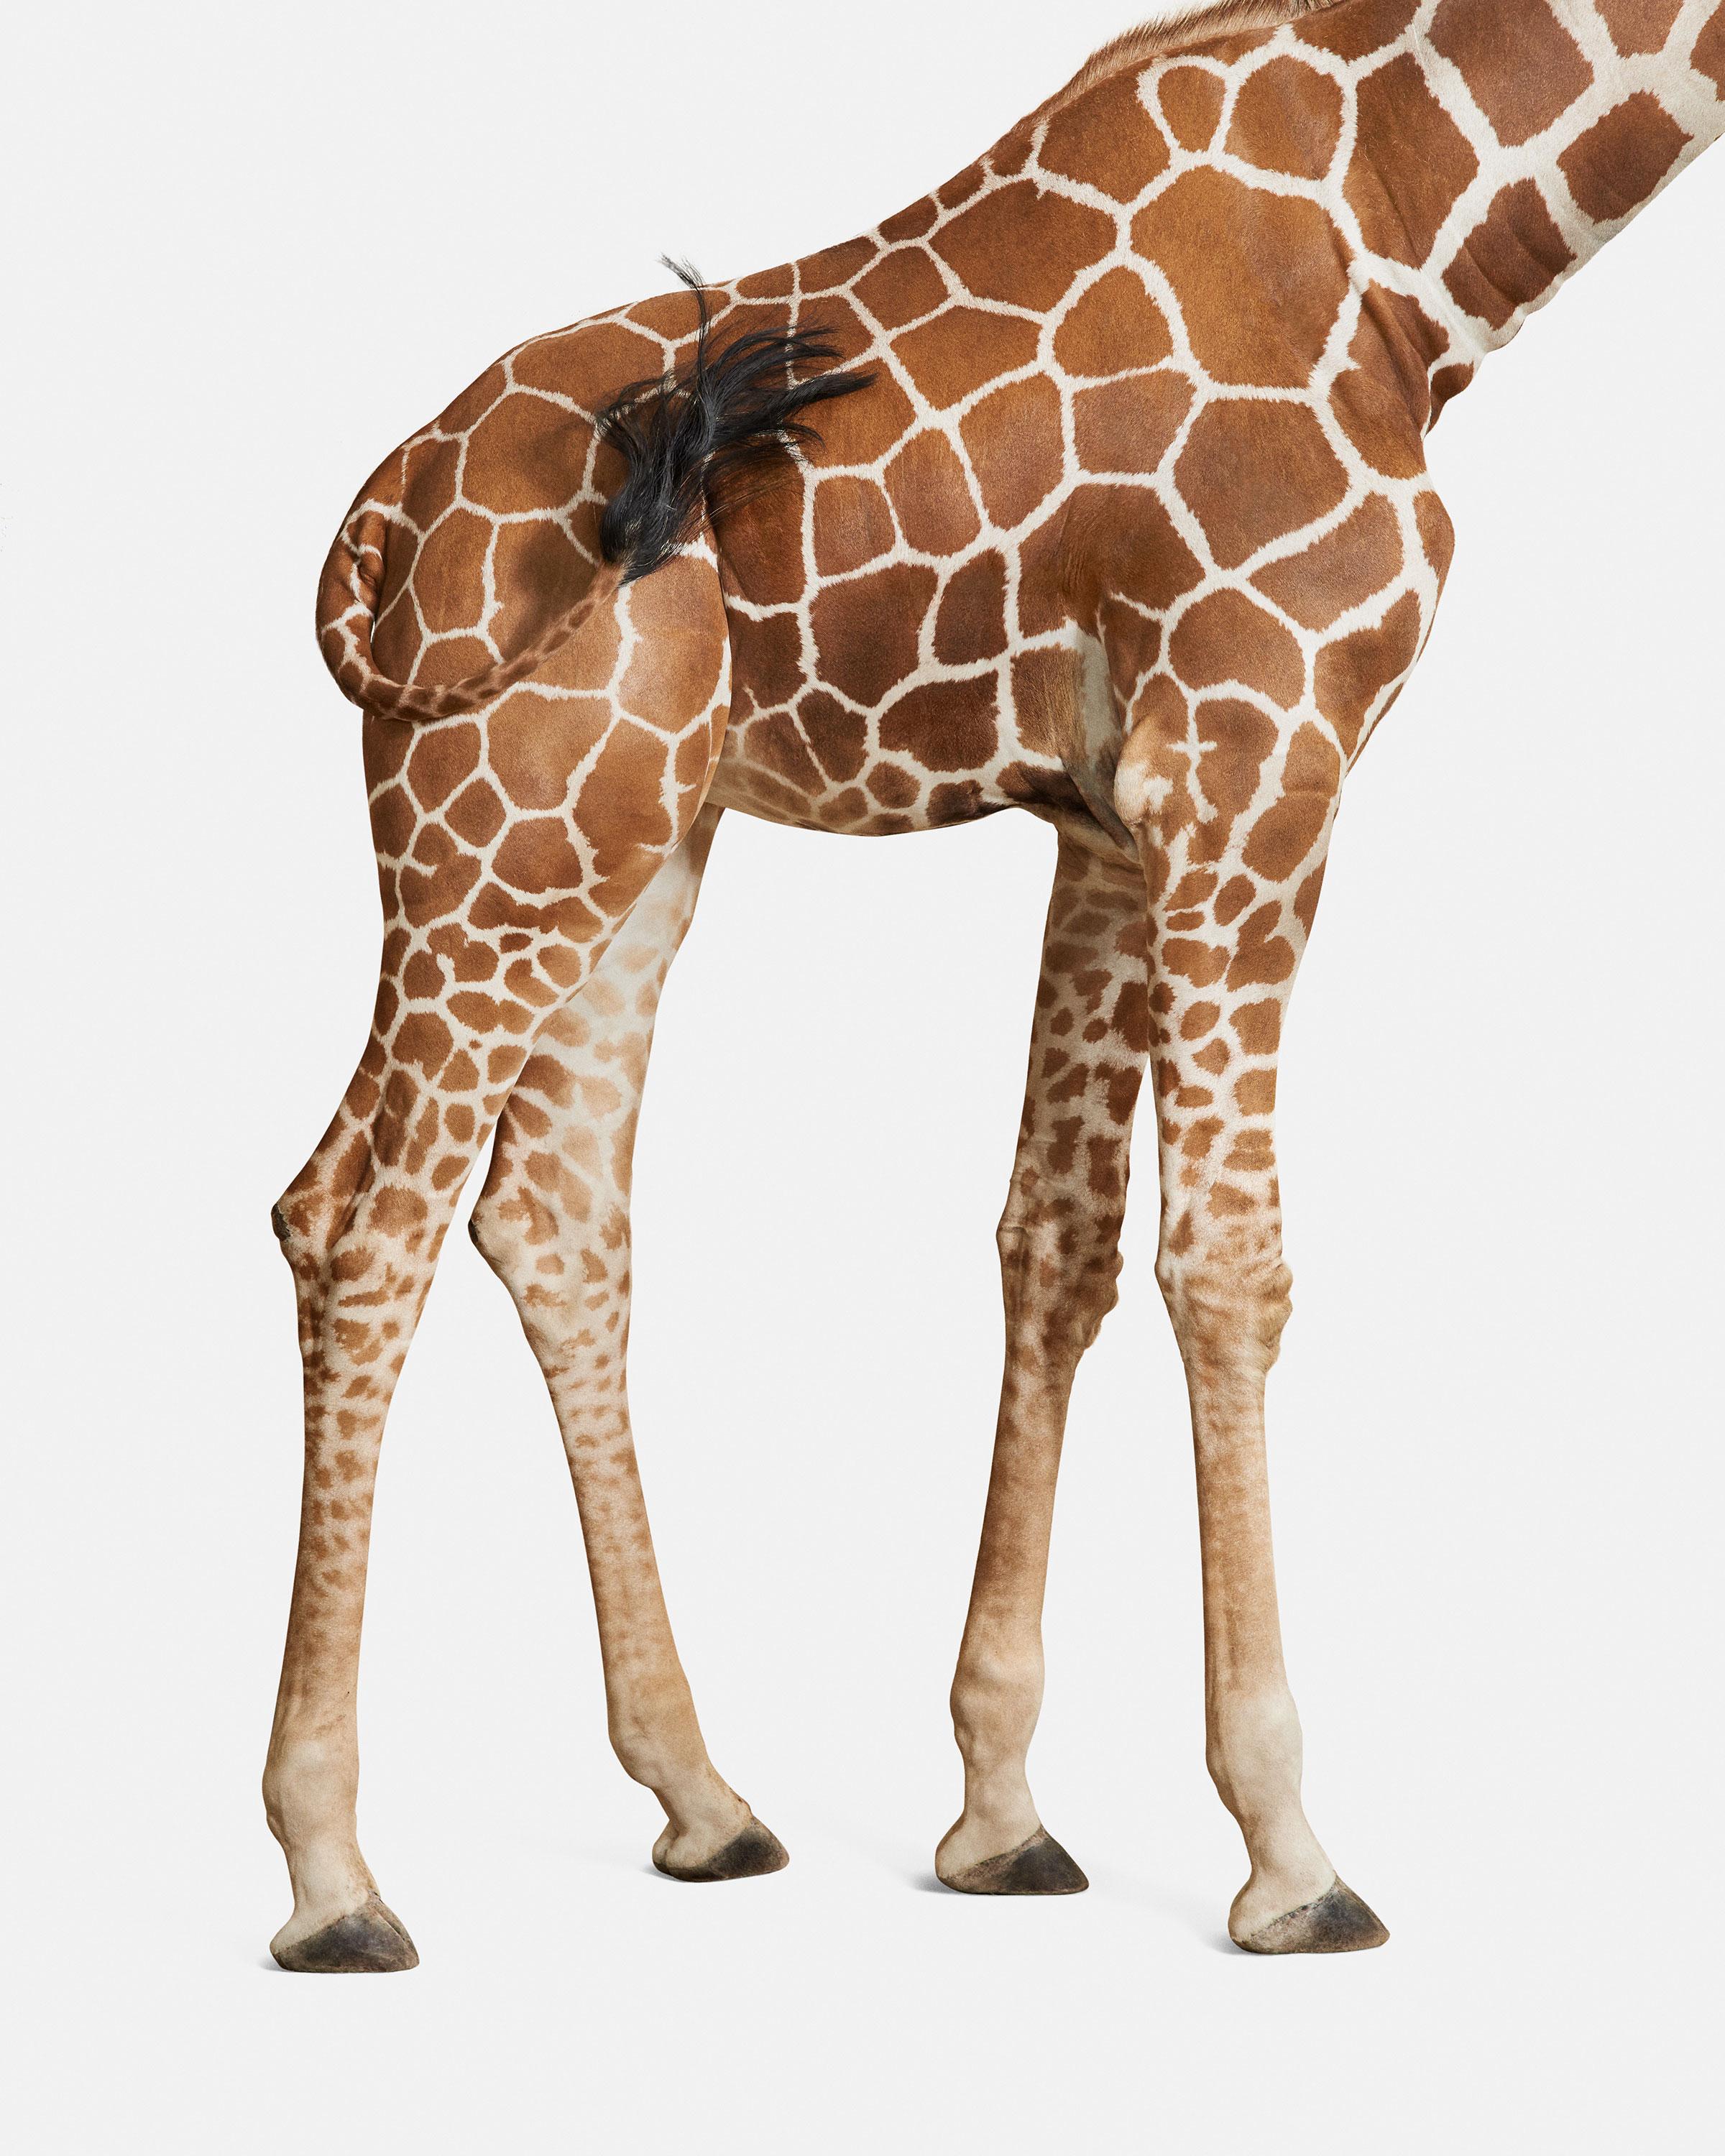 Randal Ford – Giraffen Nr. 3, Fotografie 2018